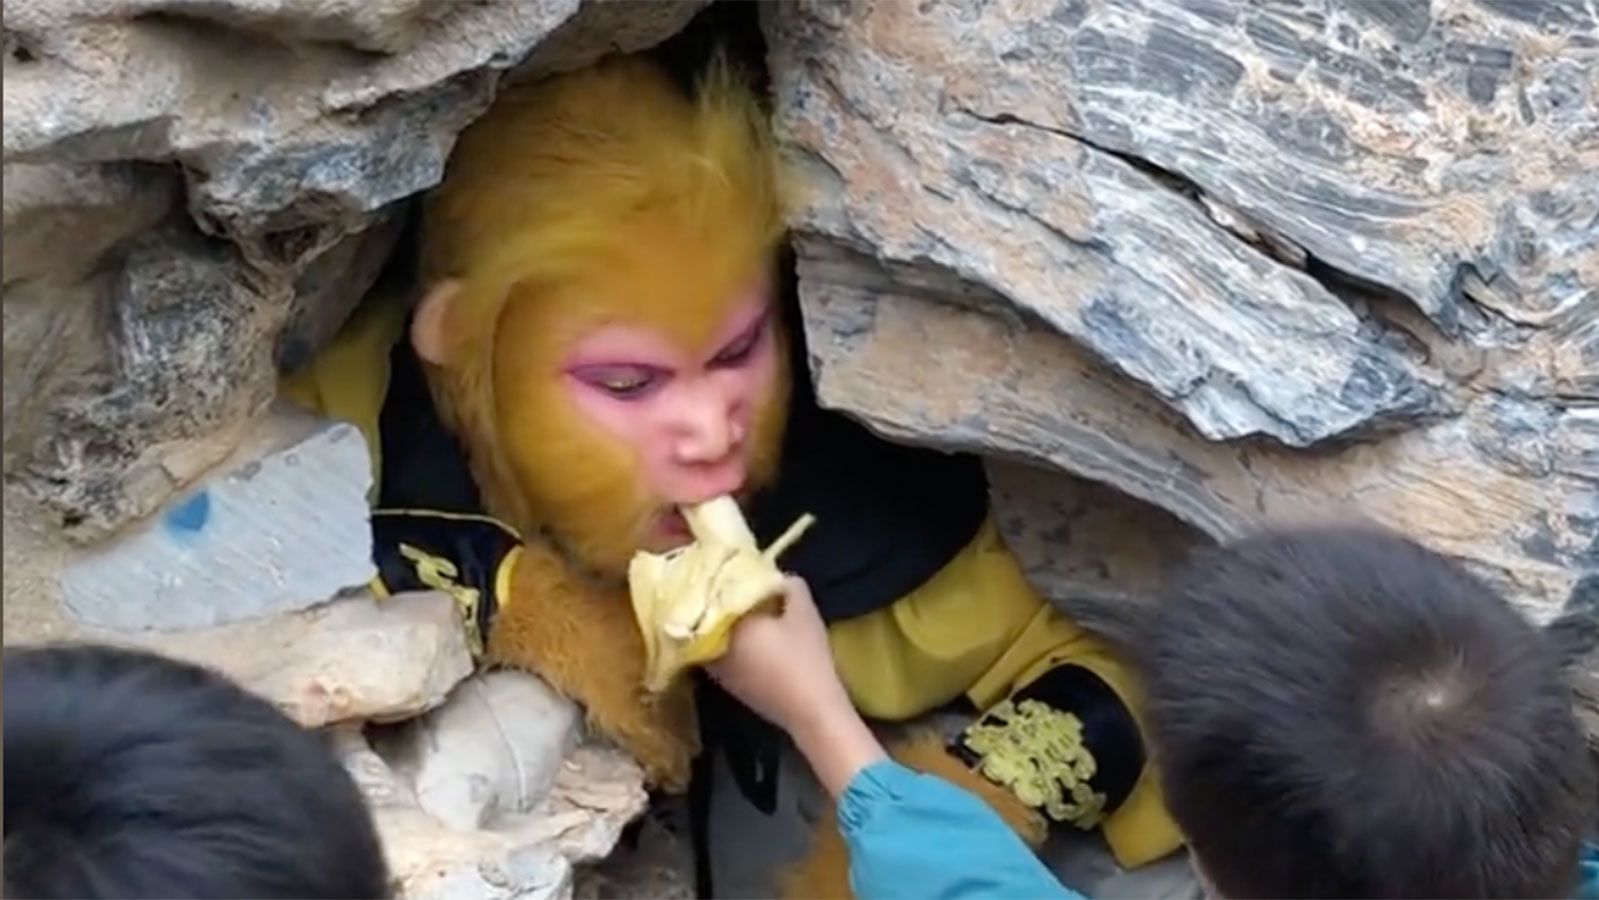 Oferta de trabajo en China: se busca un Rey Mono. Los beneficios incluyen una cueva calefaccionada y muchos plátanos